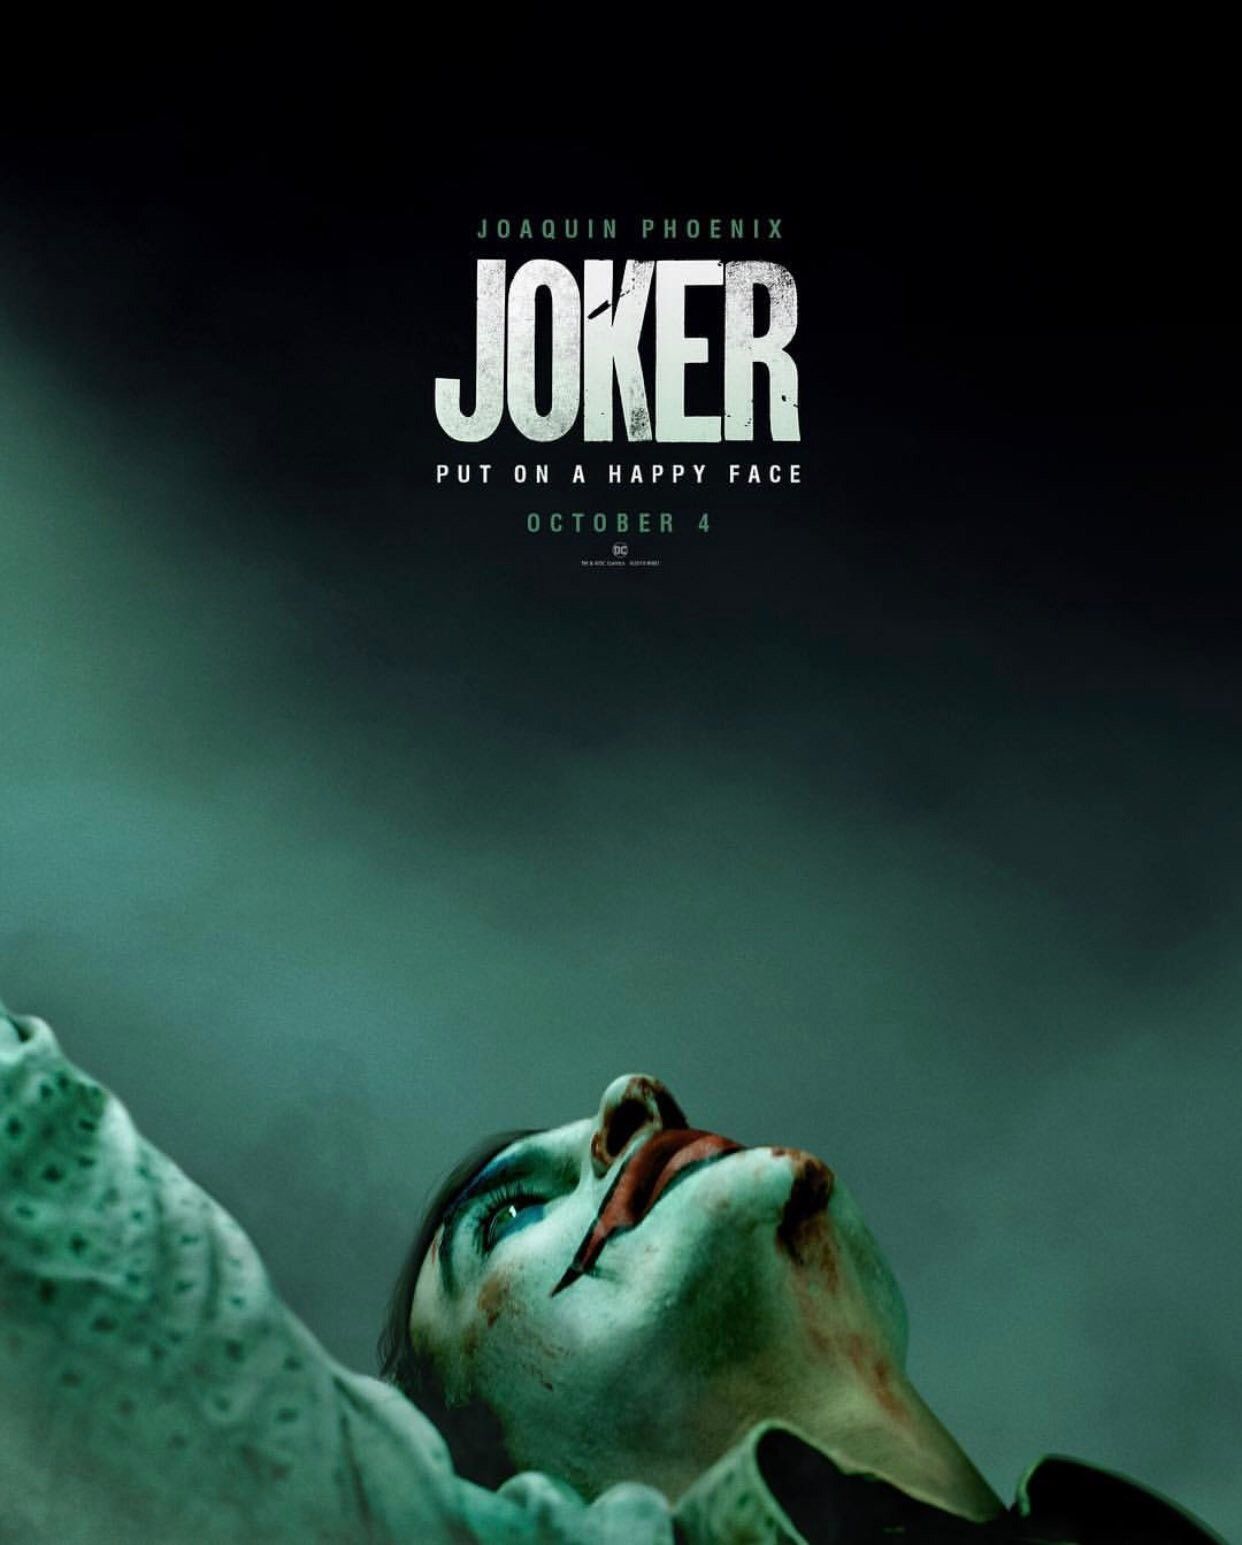 Joker 2019 movie poster